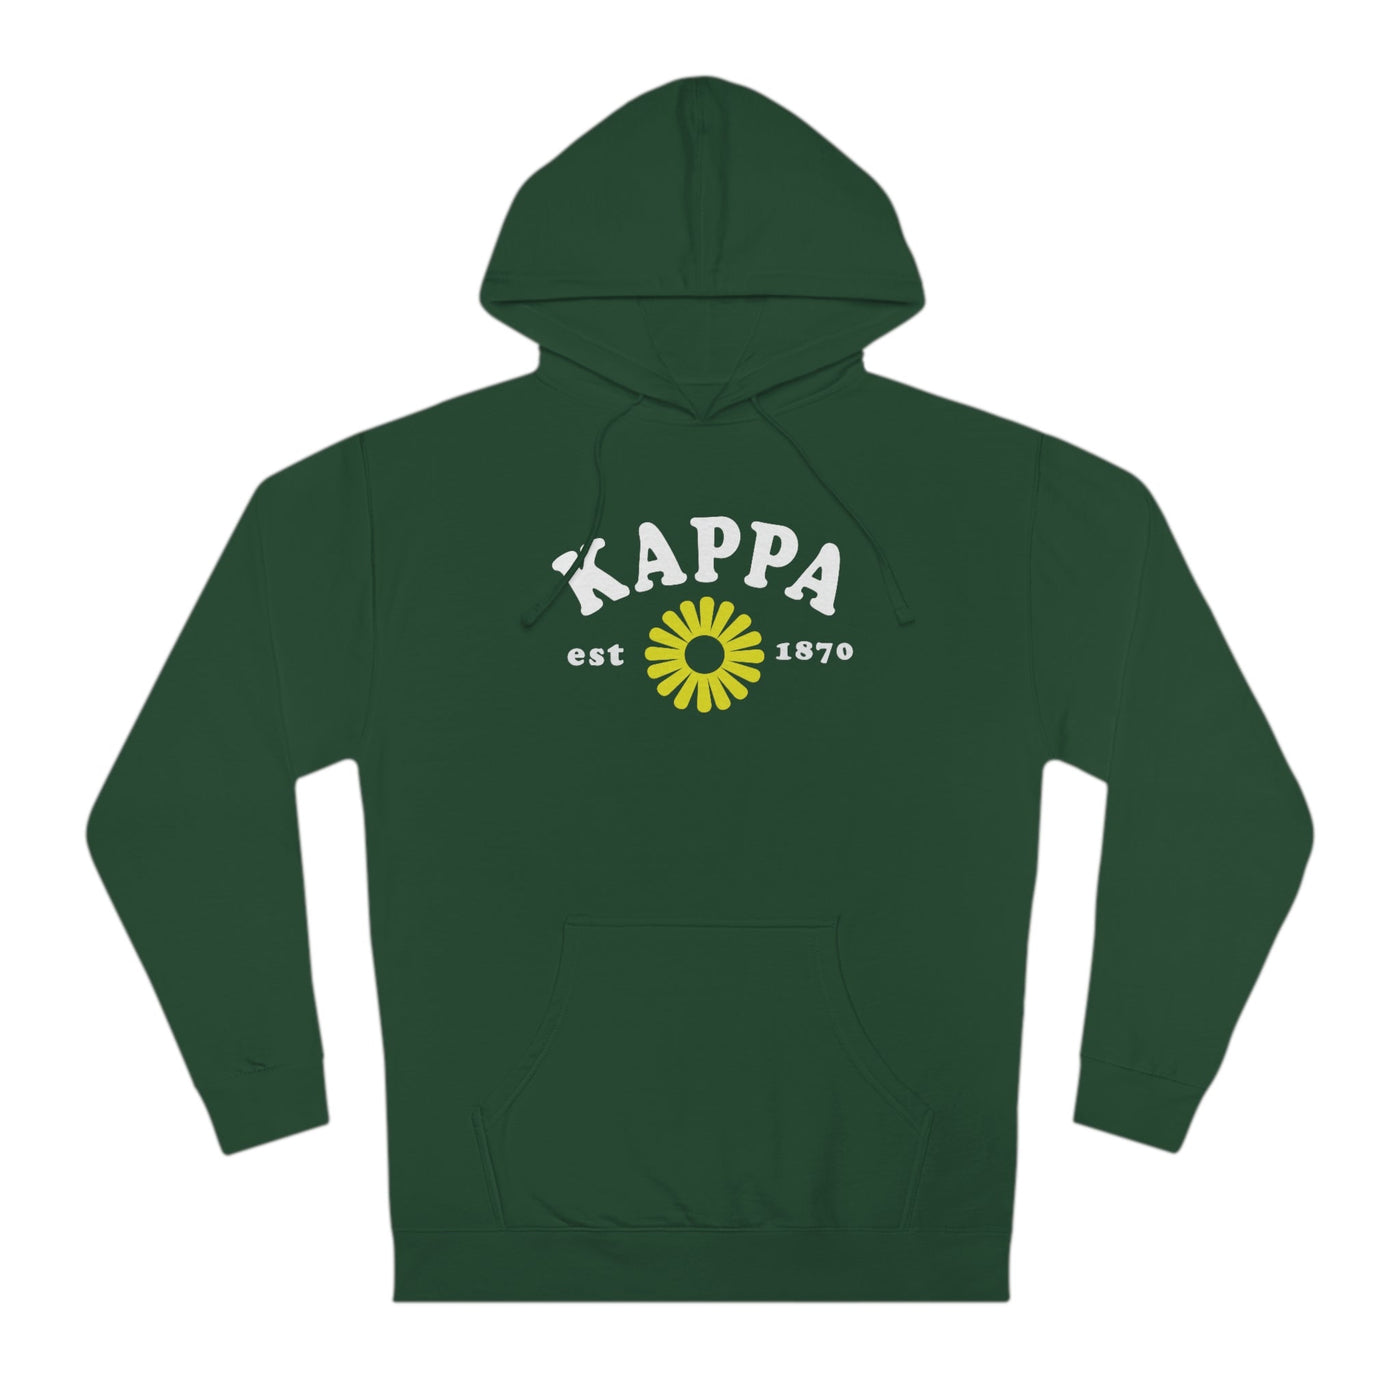 Kappa Kappa Gamma Lavender Flower Sorority Hoodie | Trendy Sorority KKG Sweatshirt